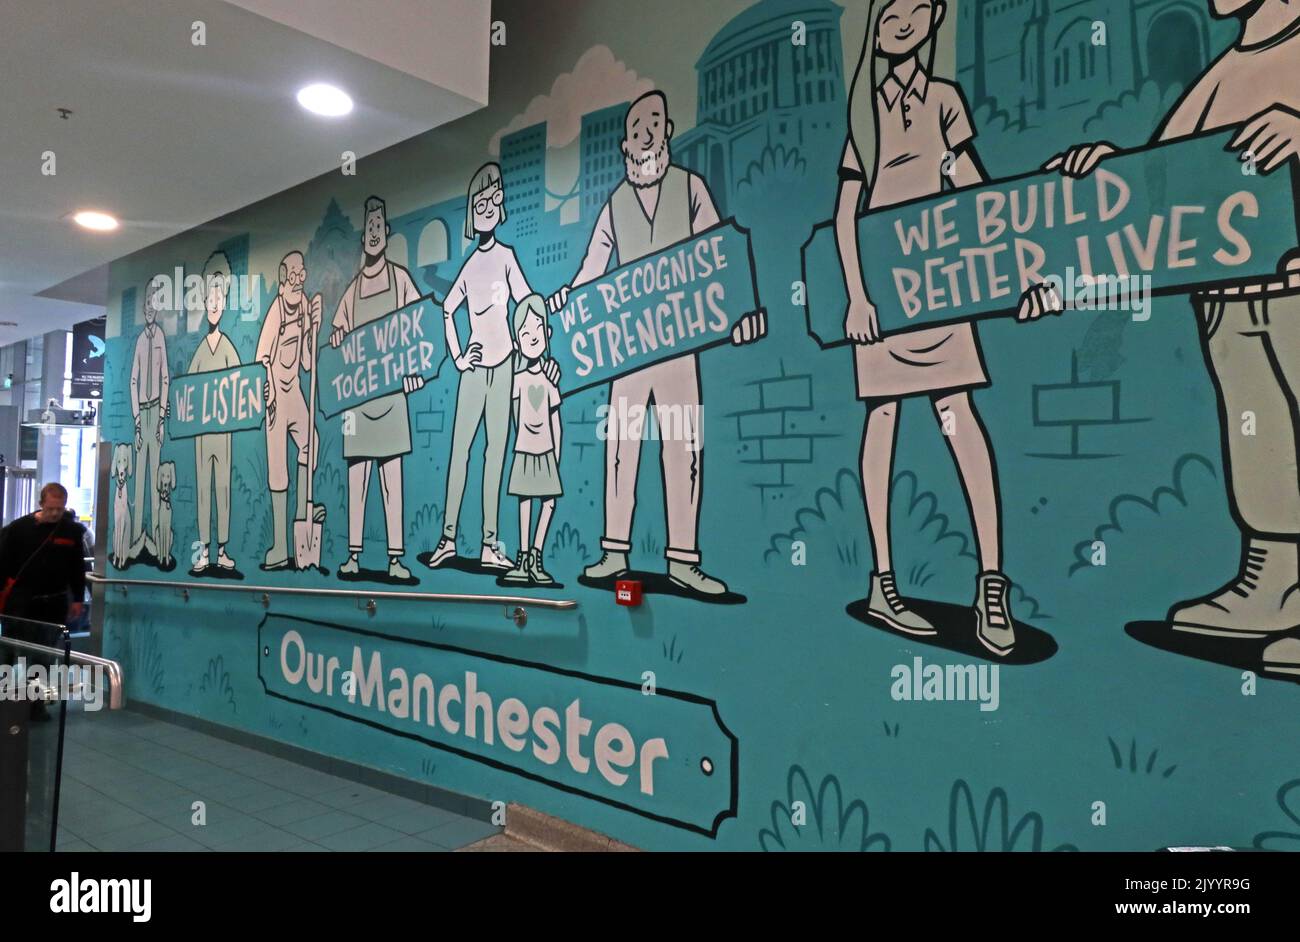 Notre Manchester, nous écoutons, nous travaillons ensemble, nous reconnaissons nos forces, fresque à Arndale Center Market, Manchester, Angleterre, Royaume-Uni, M4 3AB Banque D'Images